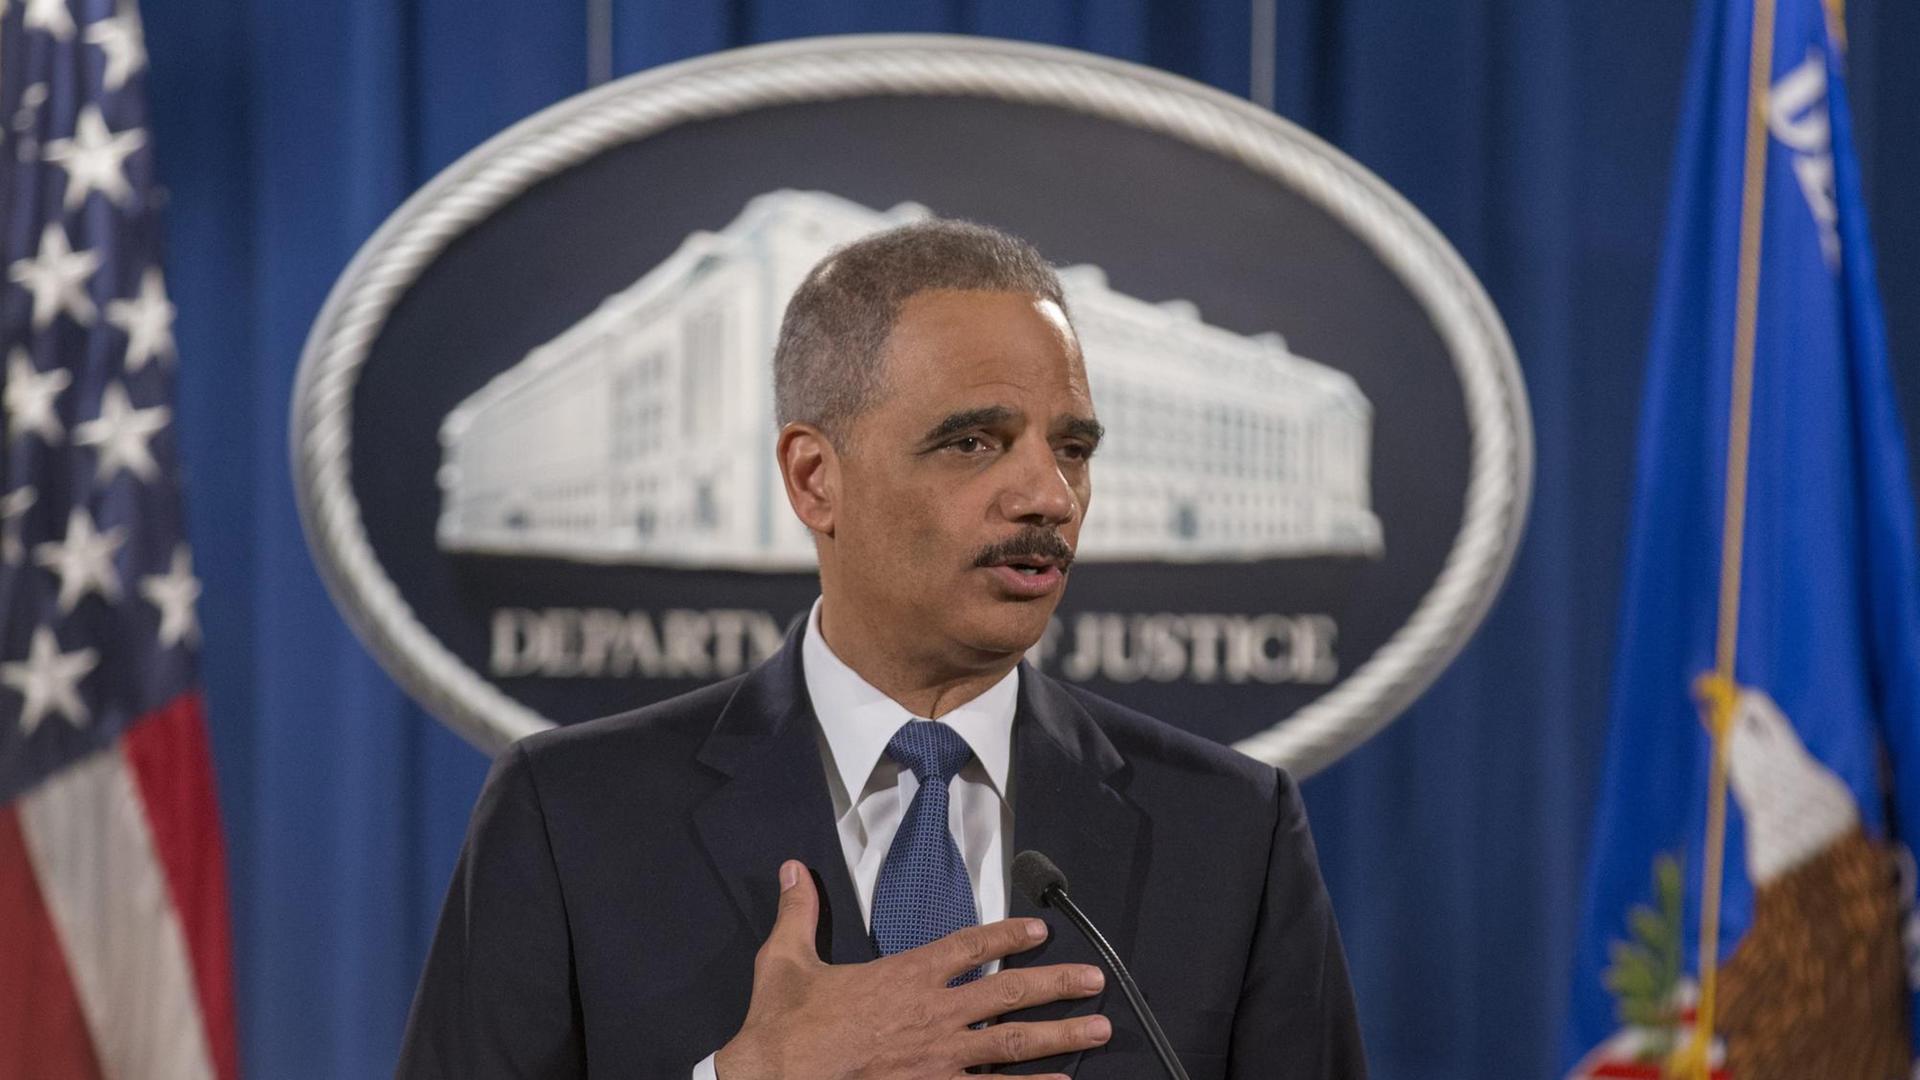 US-Justizminister Holder stellt in einer Pressekonferenz in Washington den Untersuchungsbericht zur Polizei in Ferguson vor